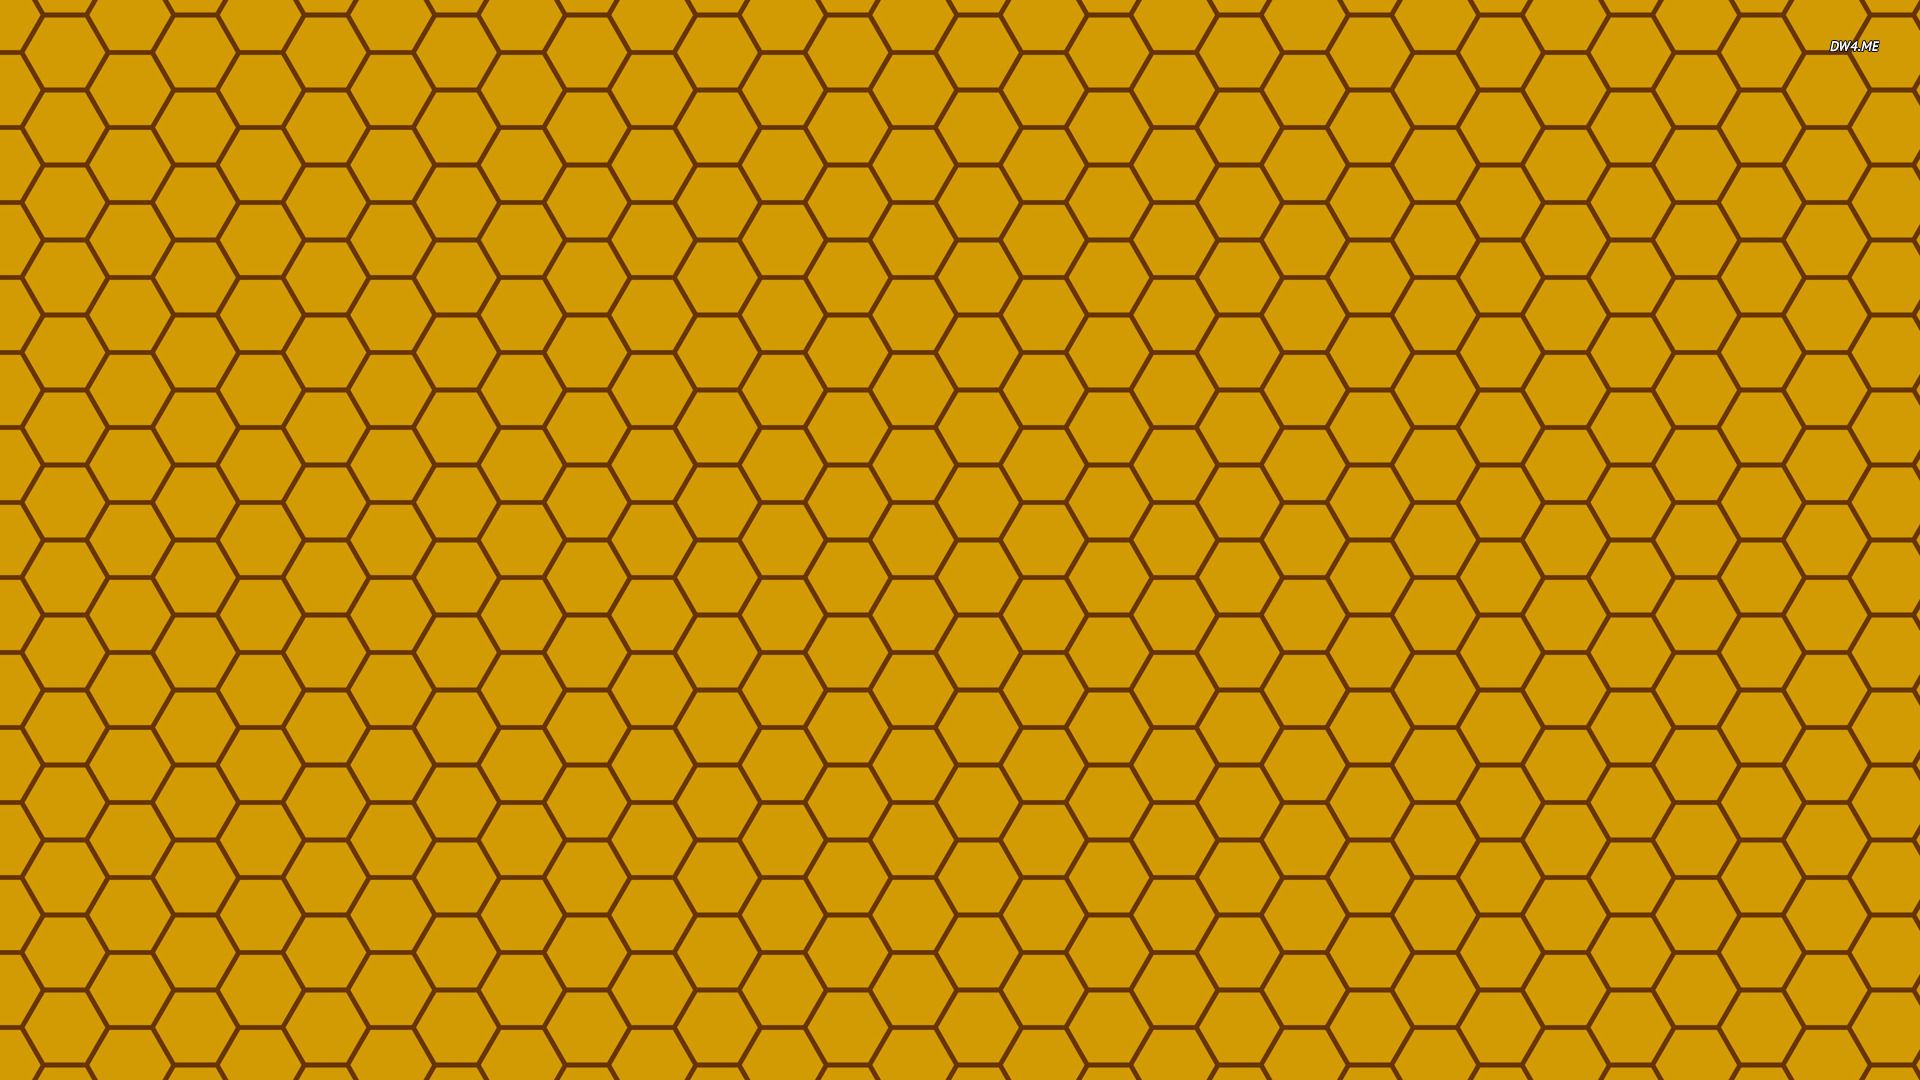 Honeycomb wallpaper - Vector wallpapers - #496